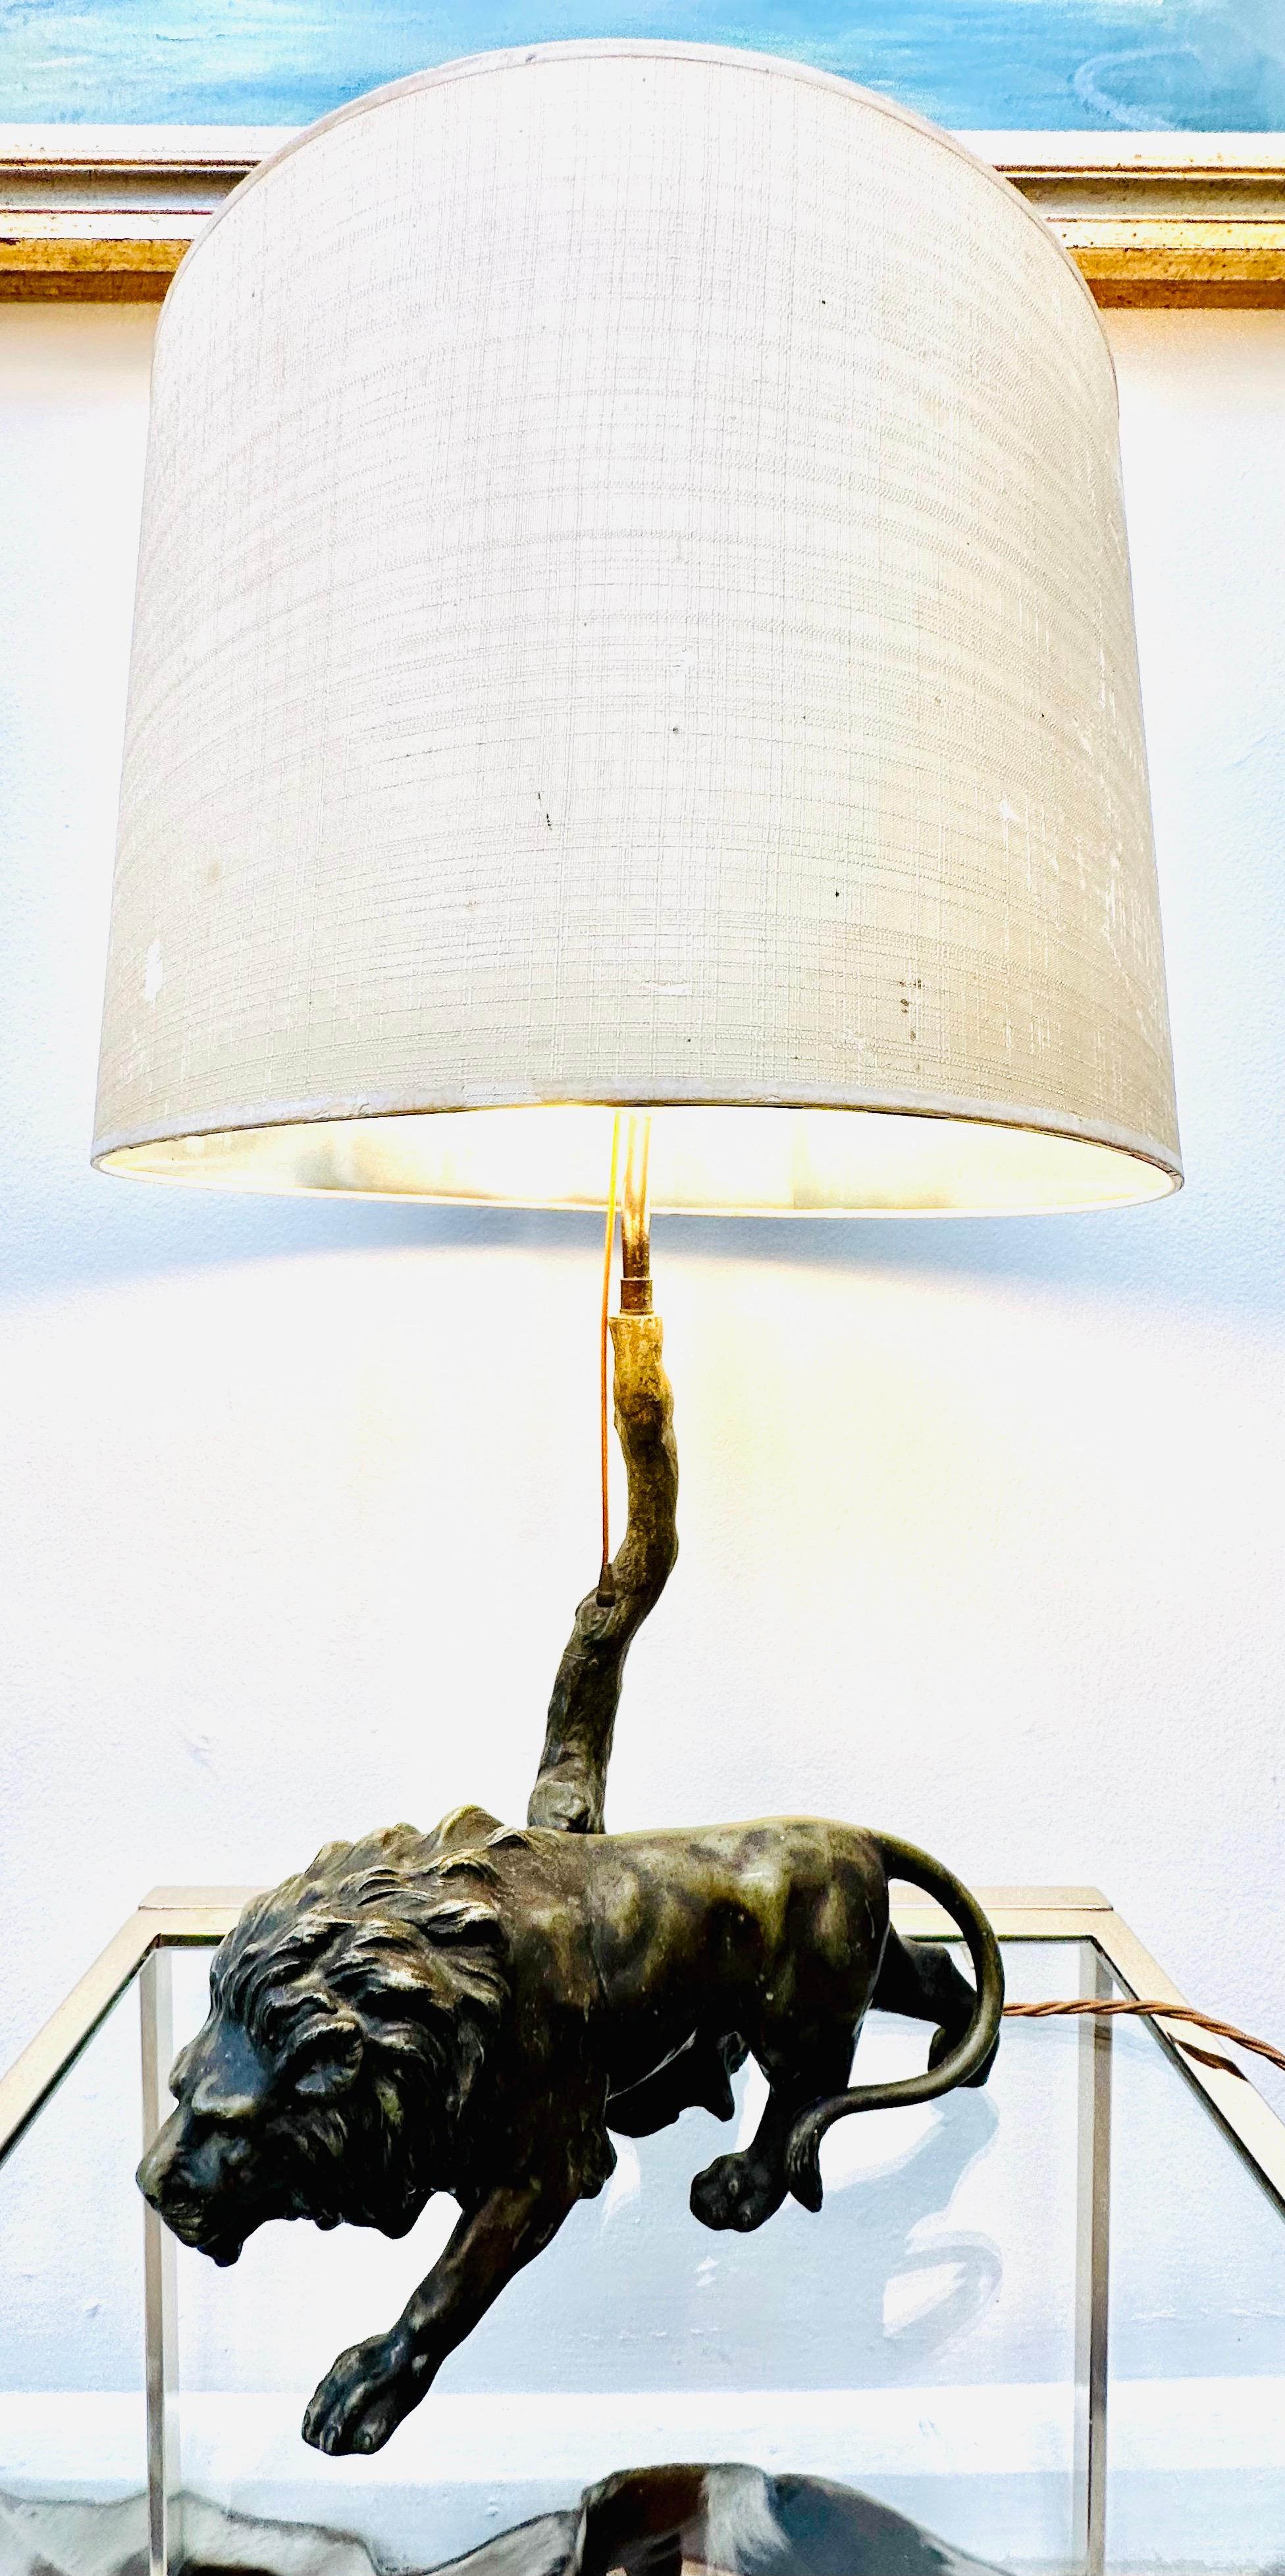 Lampe de table en bronze des années 1910 représentant un lion rôdant devant un arbre.  L'abat-jour d'origine est placé en équilibre au sommet de l'arbre et fixé à l'aide d'un embout en laiton.  La lampe de table ferait un ajout plutôt excentrique à